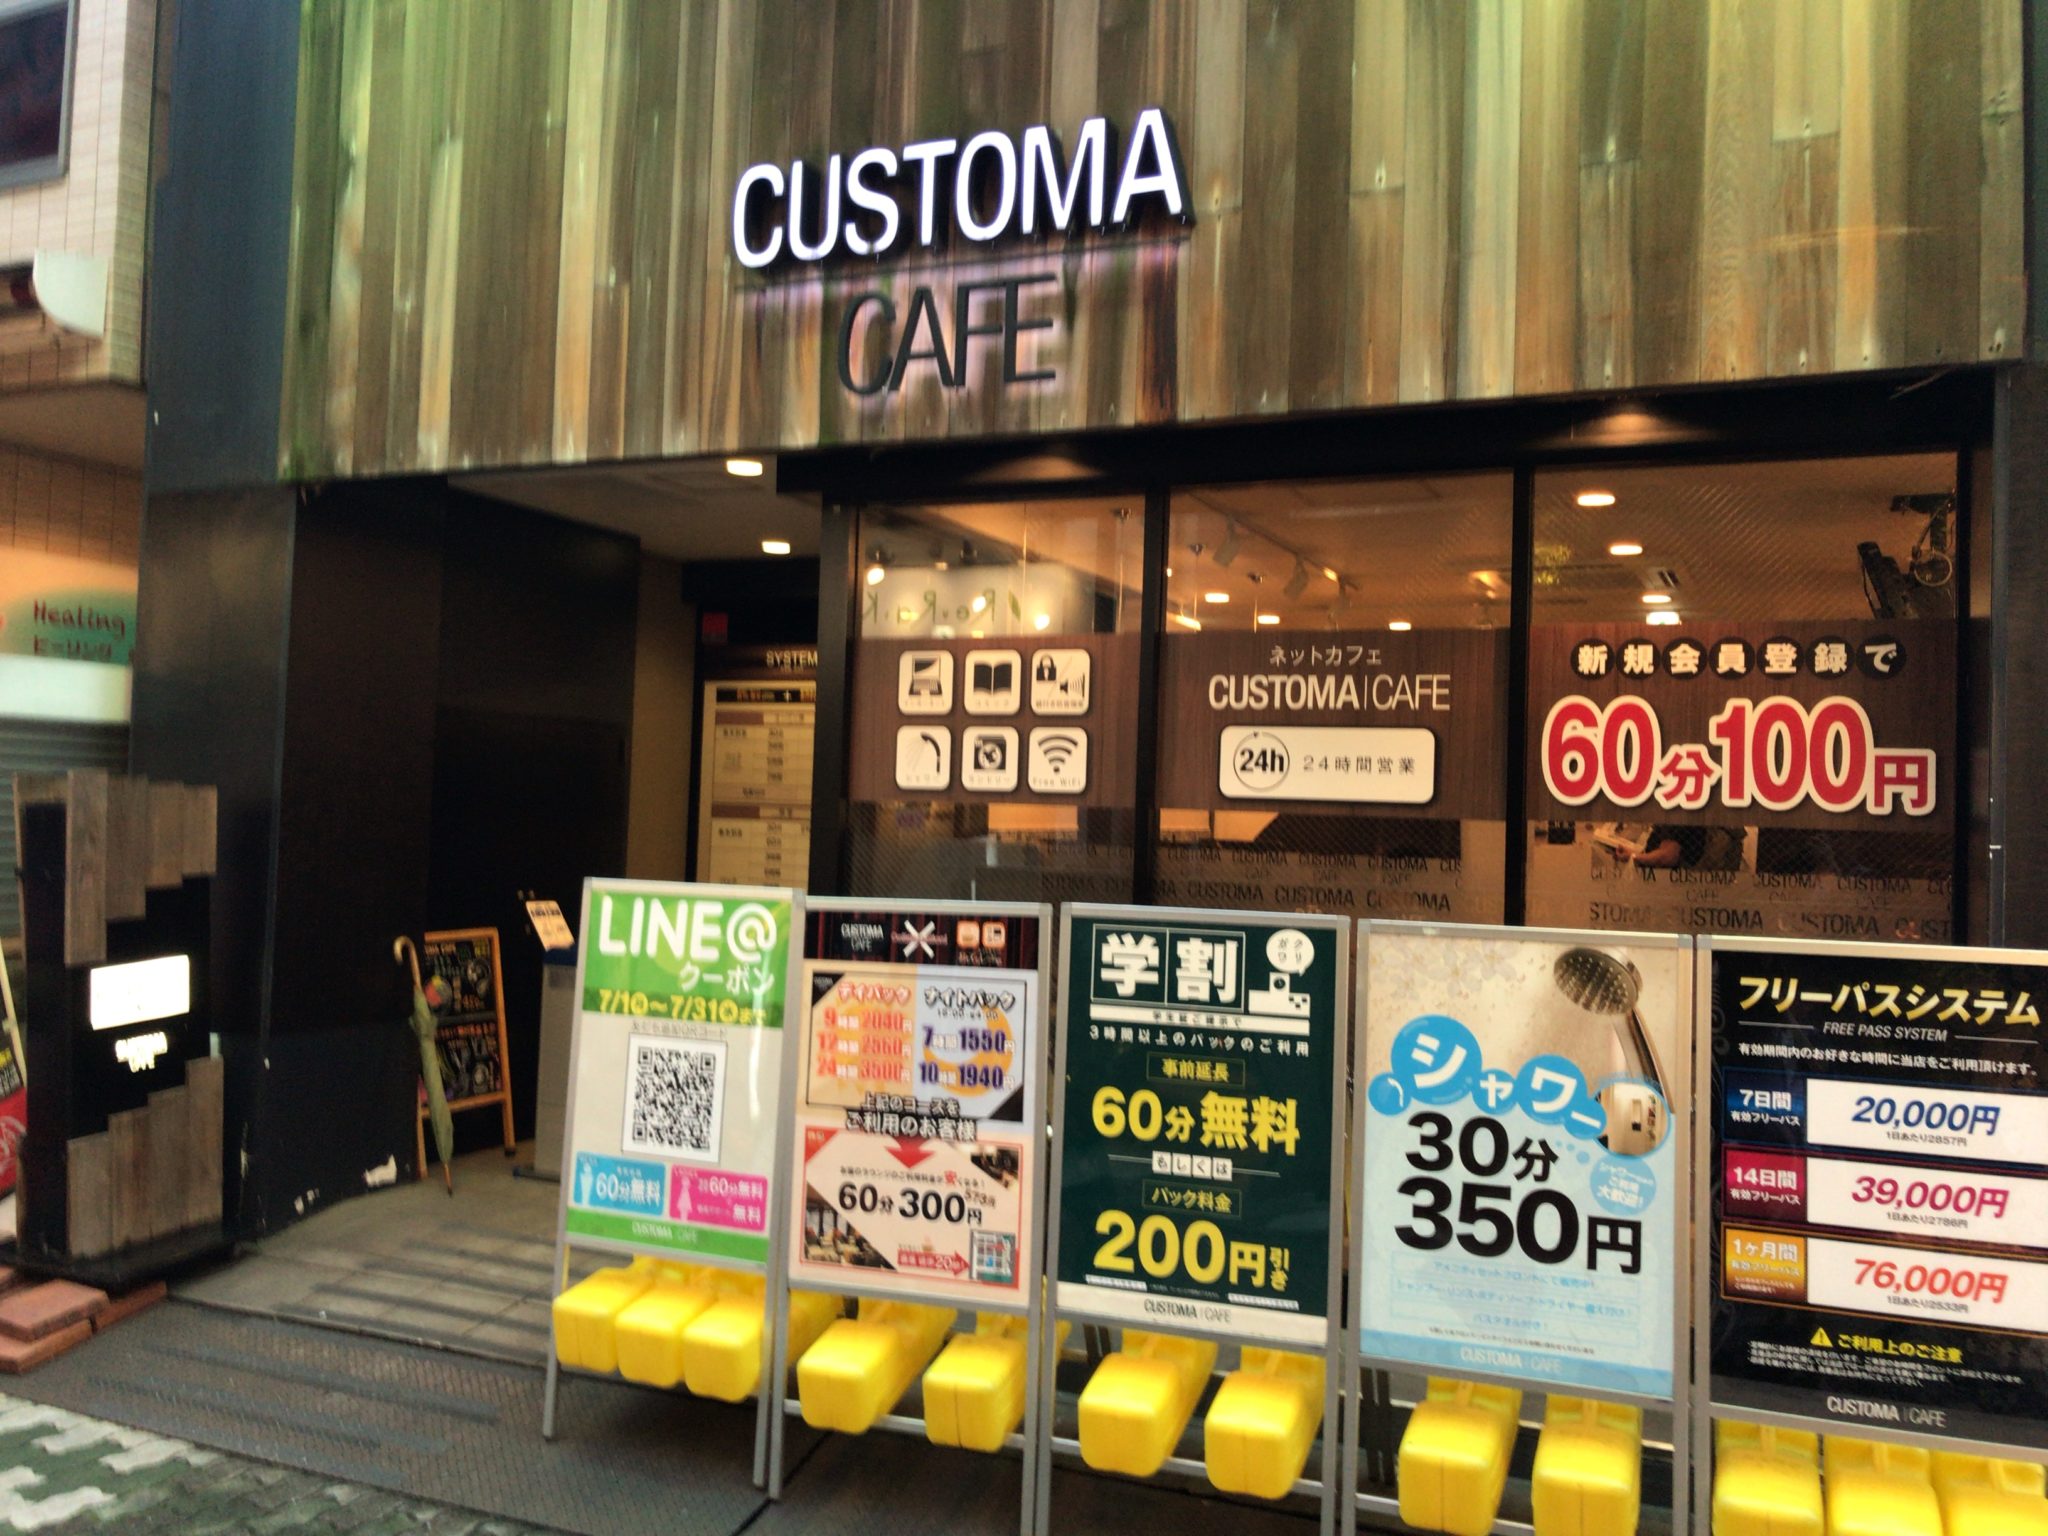 上野駅から徒歩2分 カスタマカフェ 上野店をレポート 日本全国のネカフェ 漫画喫茶マップのヒマップ